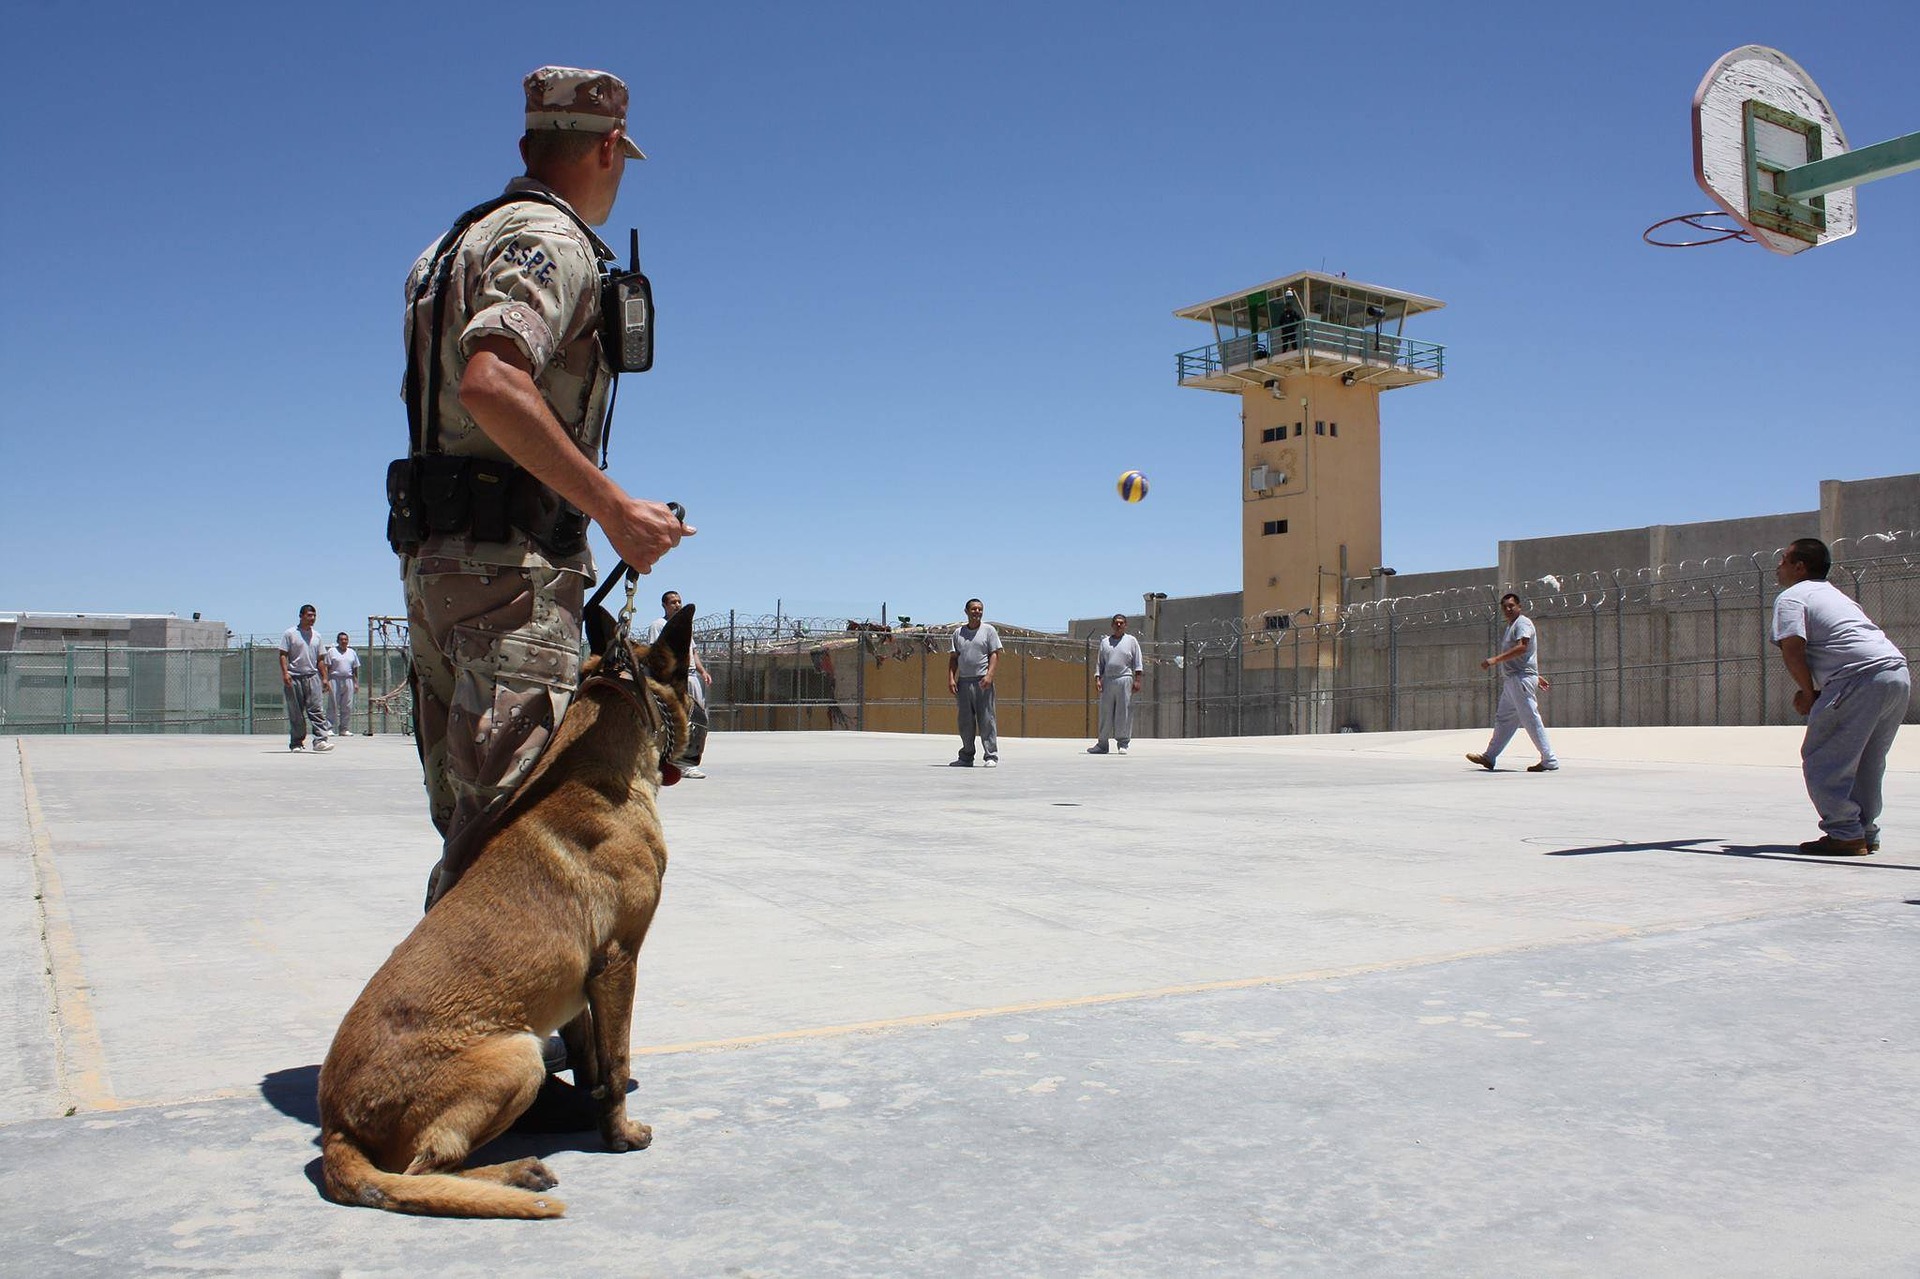 Polizei- oder Rettungshunde arbeiten nur für eine begrenzte Zeit. Nach dem Dienst bleiben sie in der Regel bei ihren Hundeführern.